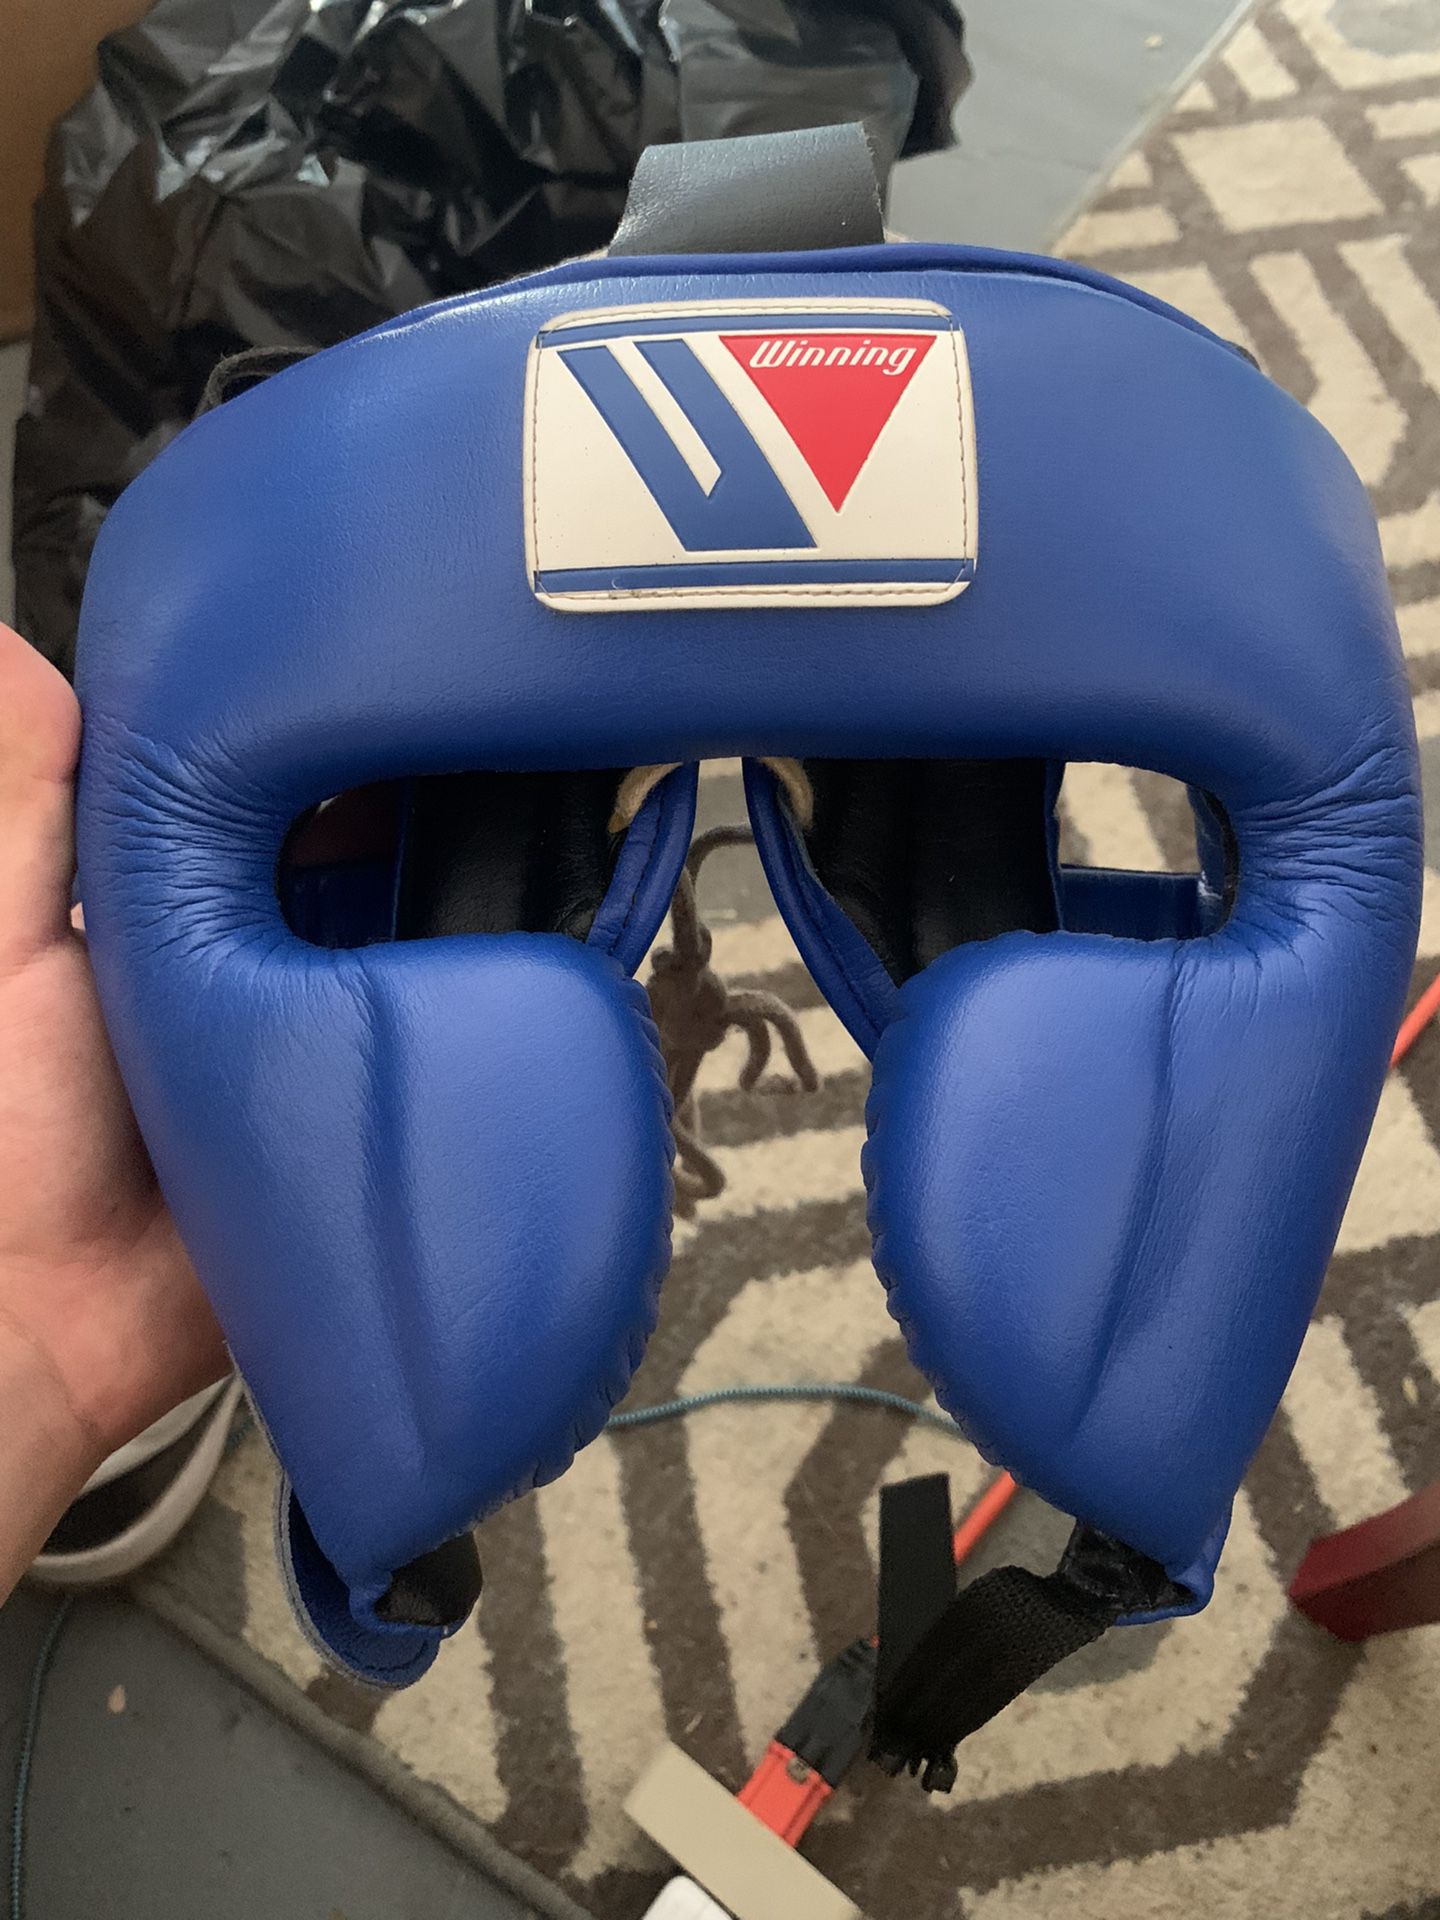 Winning Boxing Headset